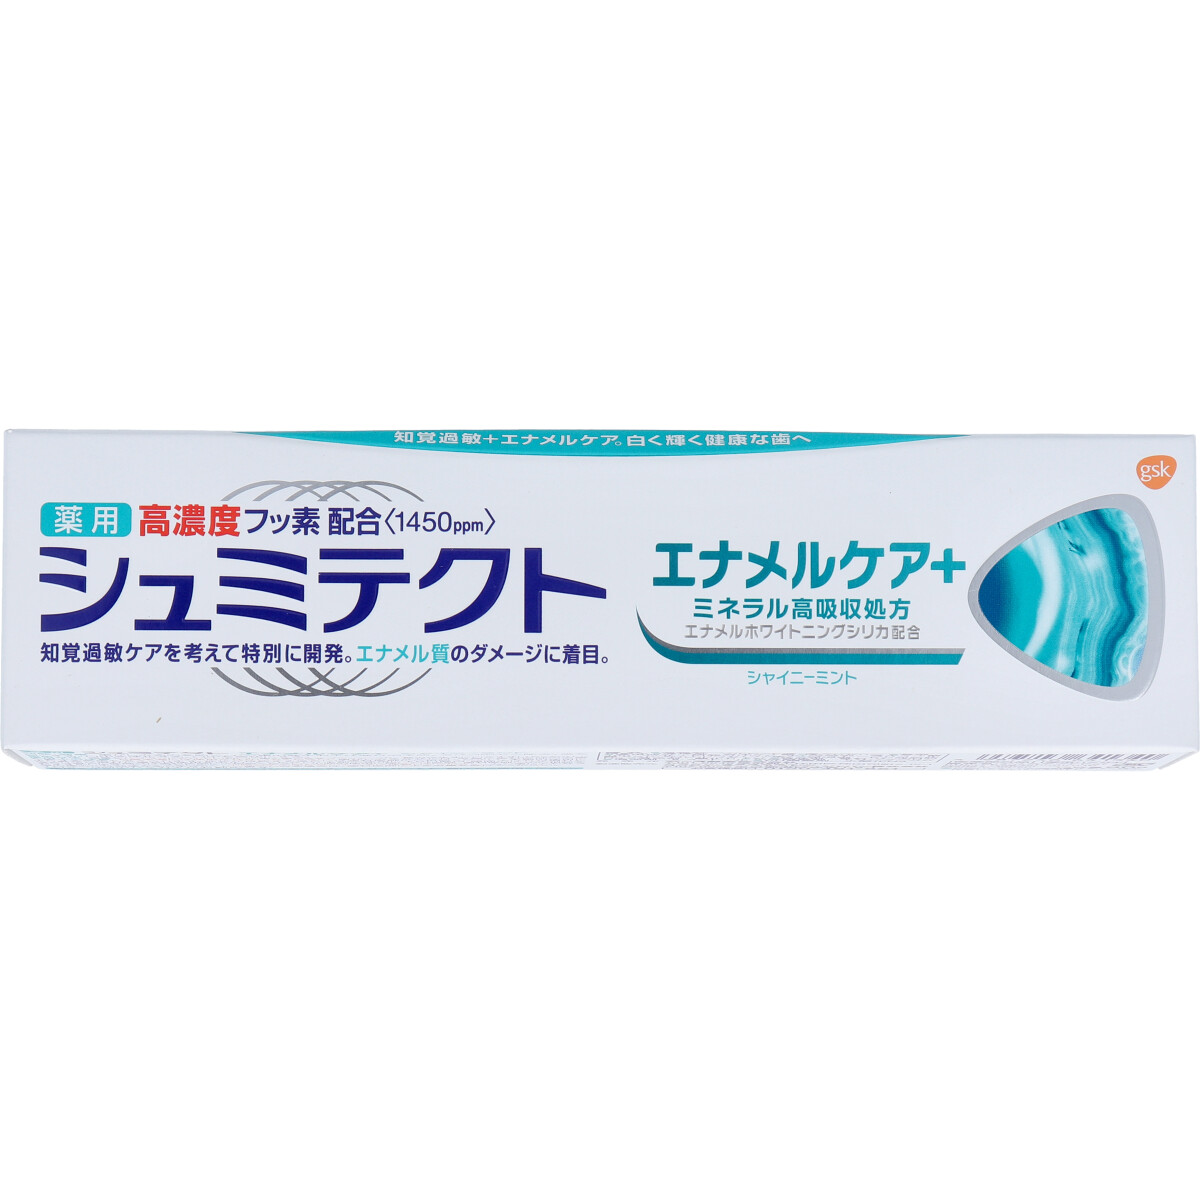 グラクソ・スミスクライン シュミテクト エナメルケア＋ 90g × 2本 薬用シュミテクト 歯磨き粉の商品画像